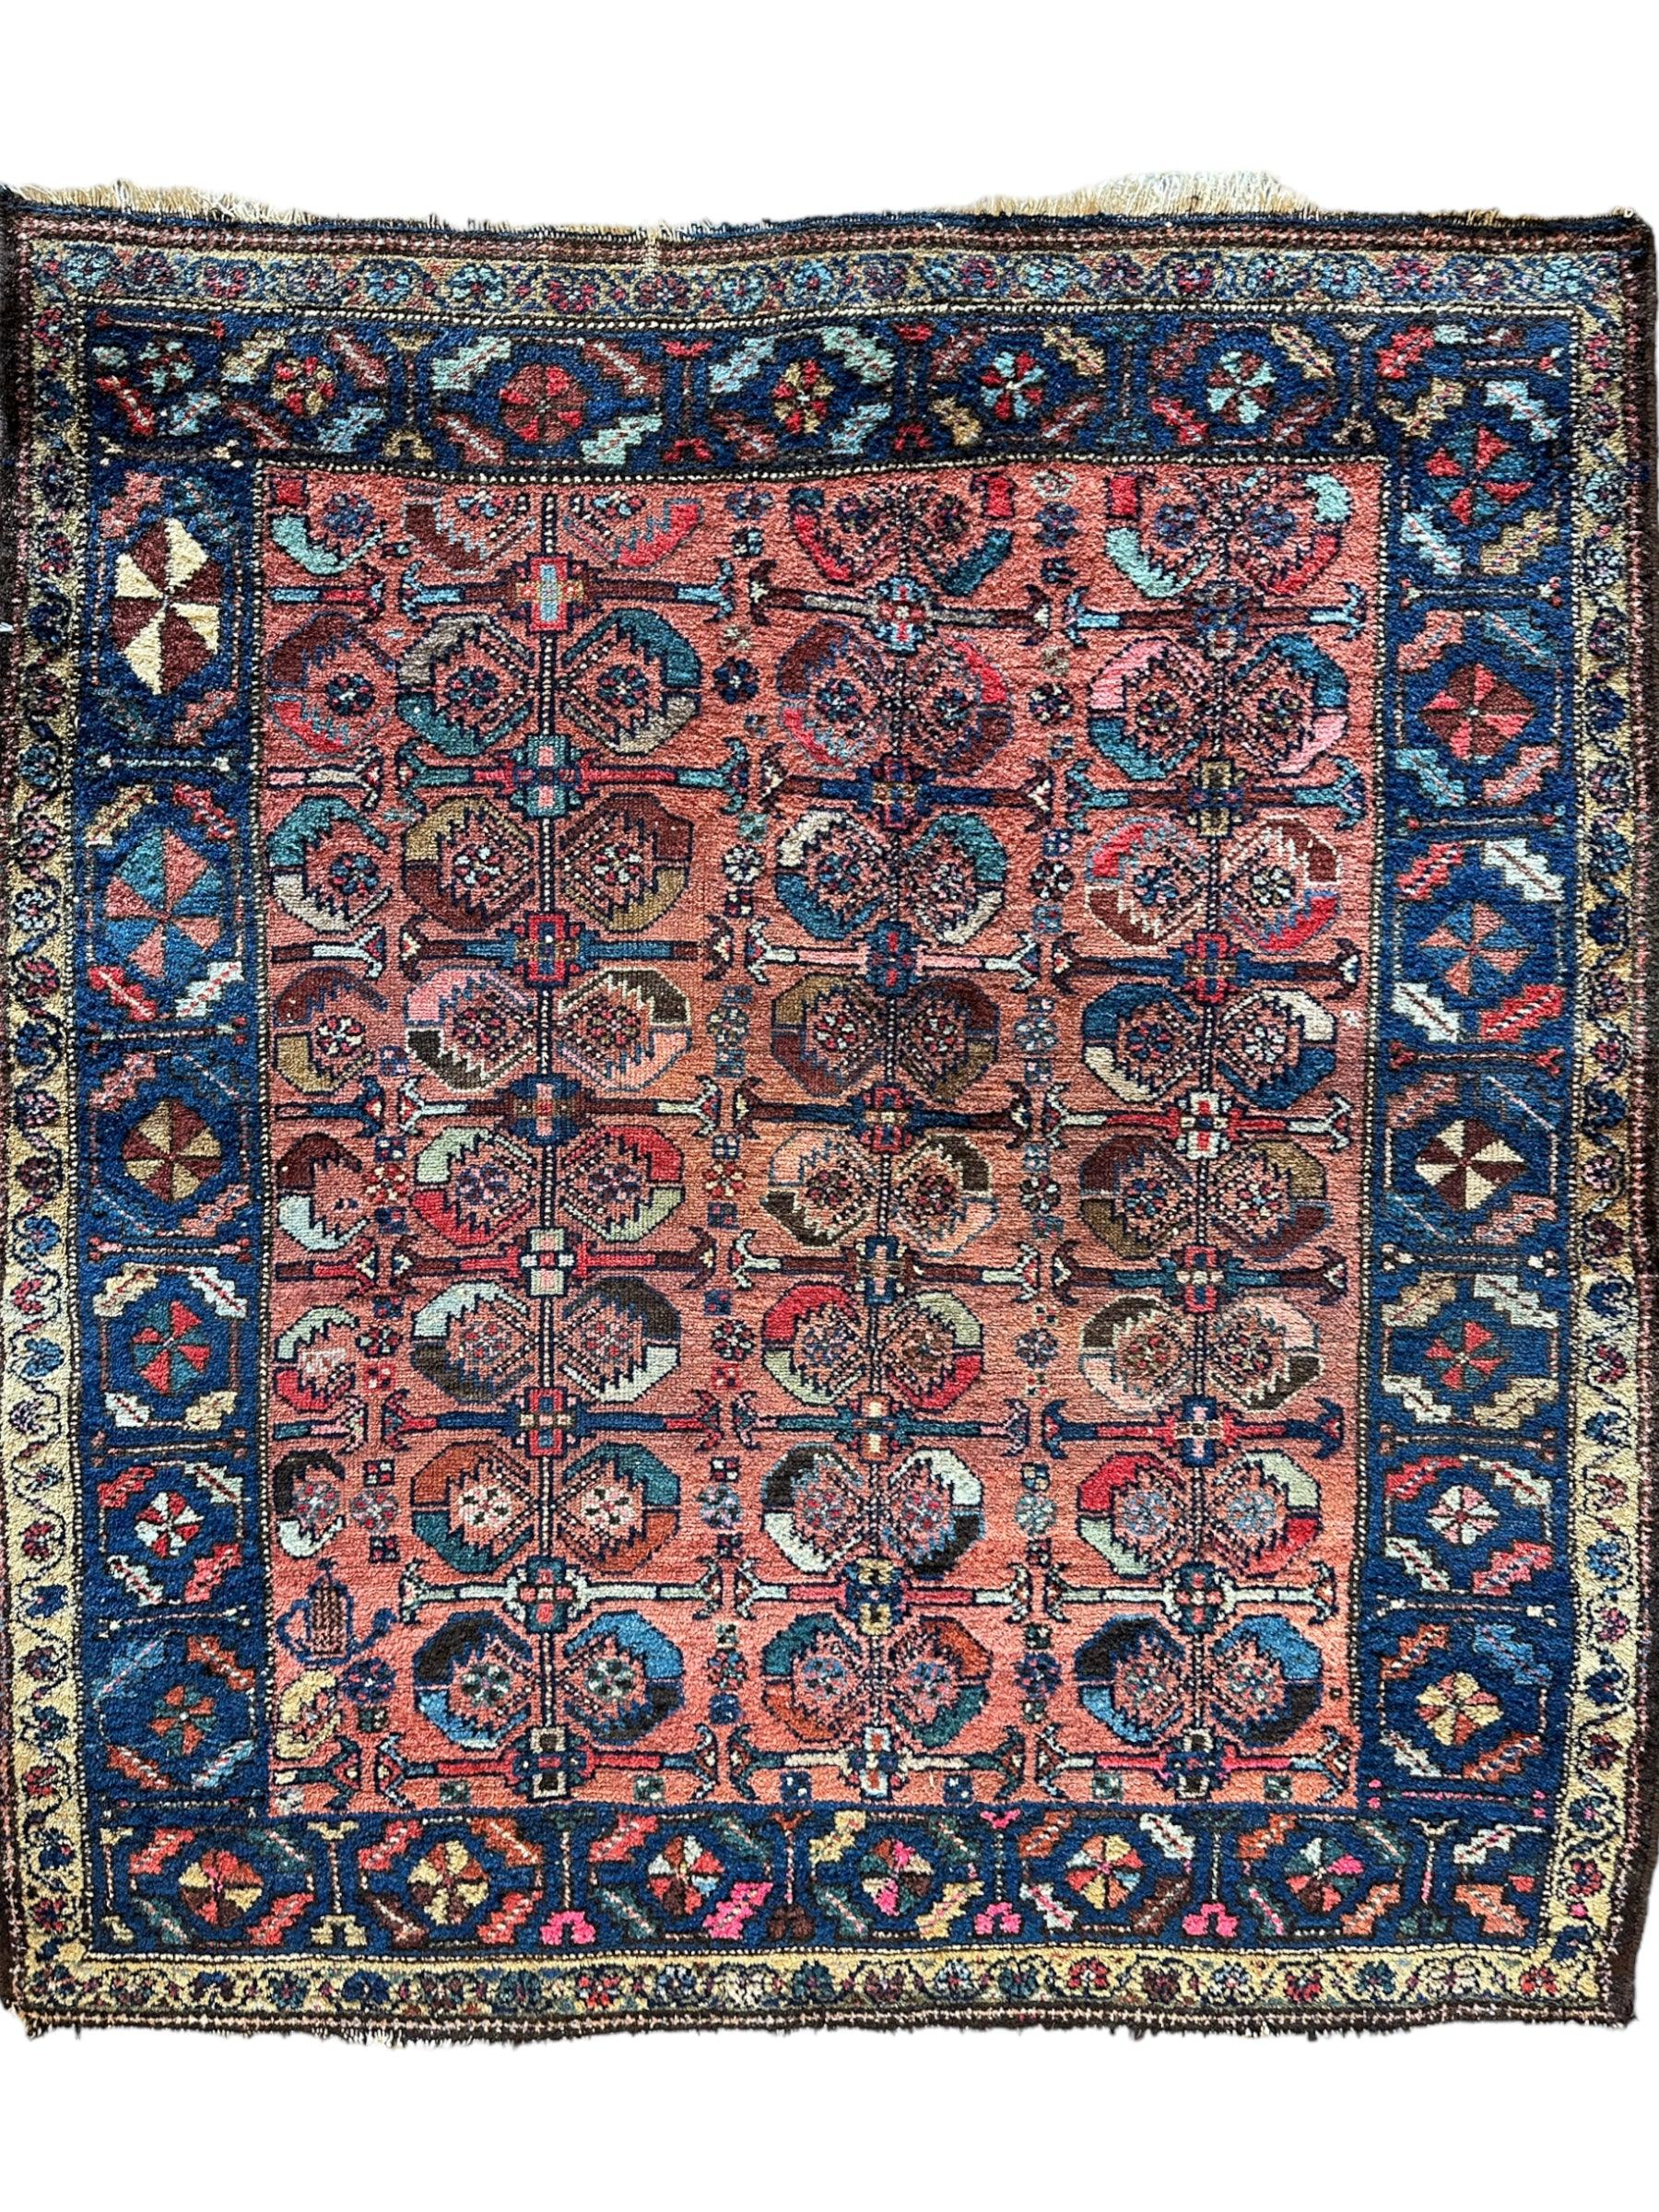 Antique One of Kind Persian Hamedan Enjelas Rug 3’11” x 4’4”